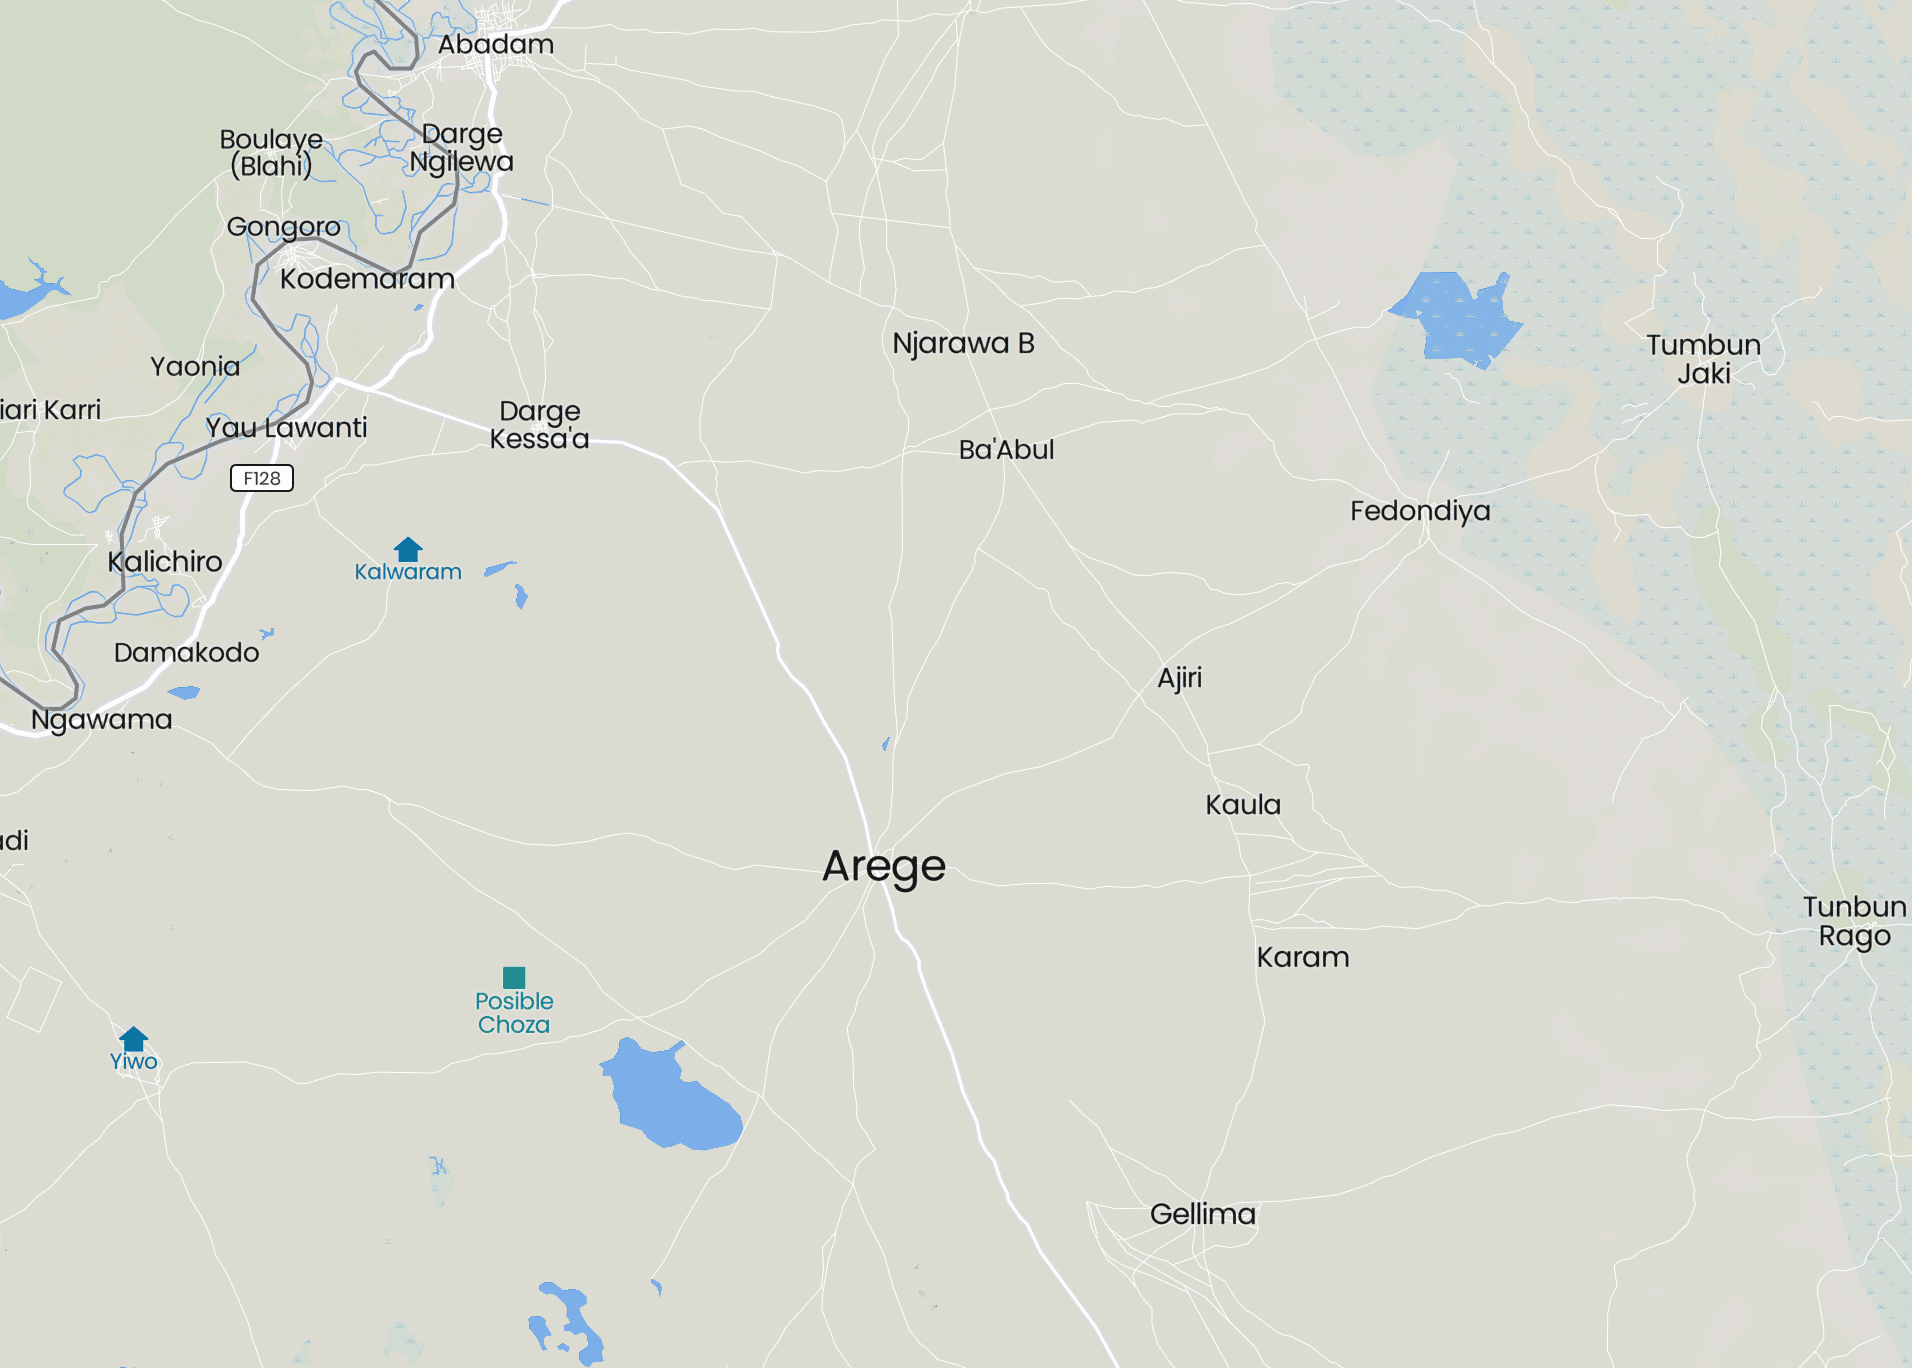 Arege, Abadam LGA, Borno State, Nigeria